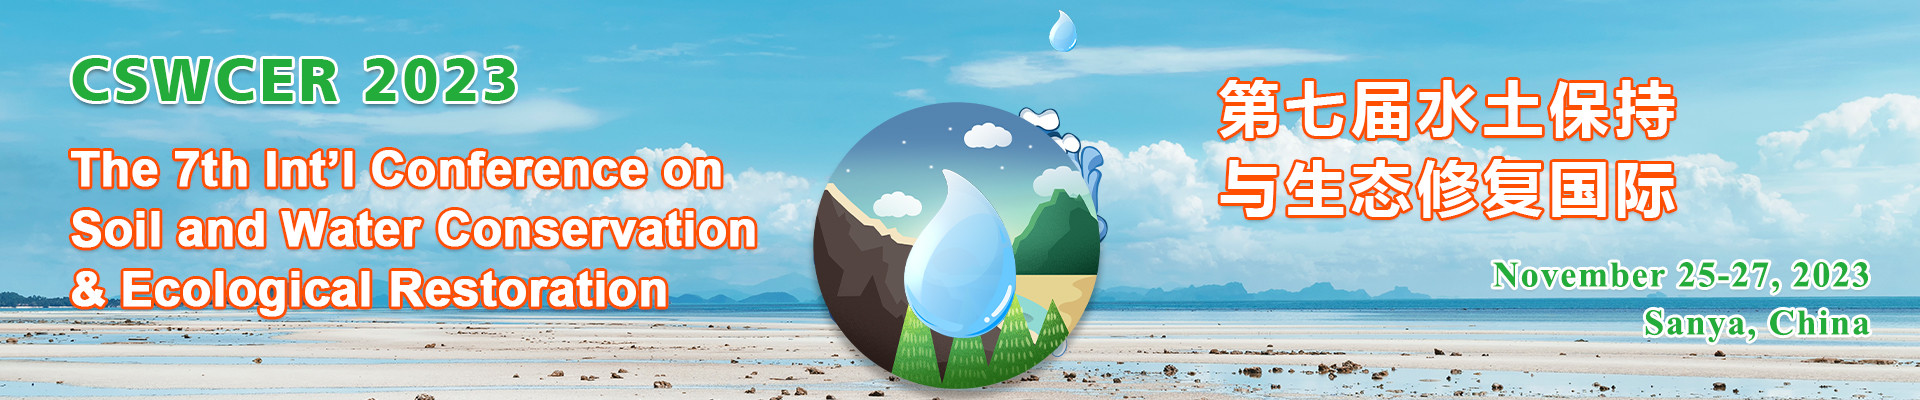 第七屆水土保持與生態修復國際研討會(CSWCER 2023)?